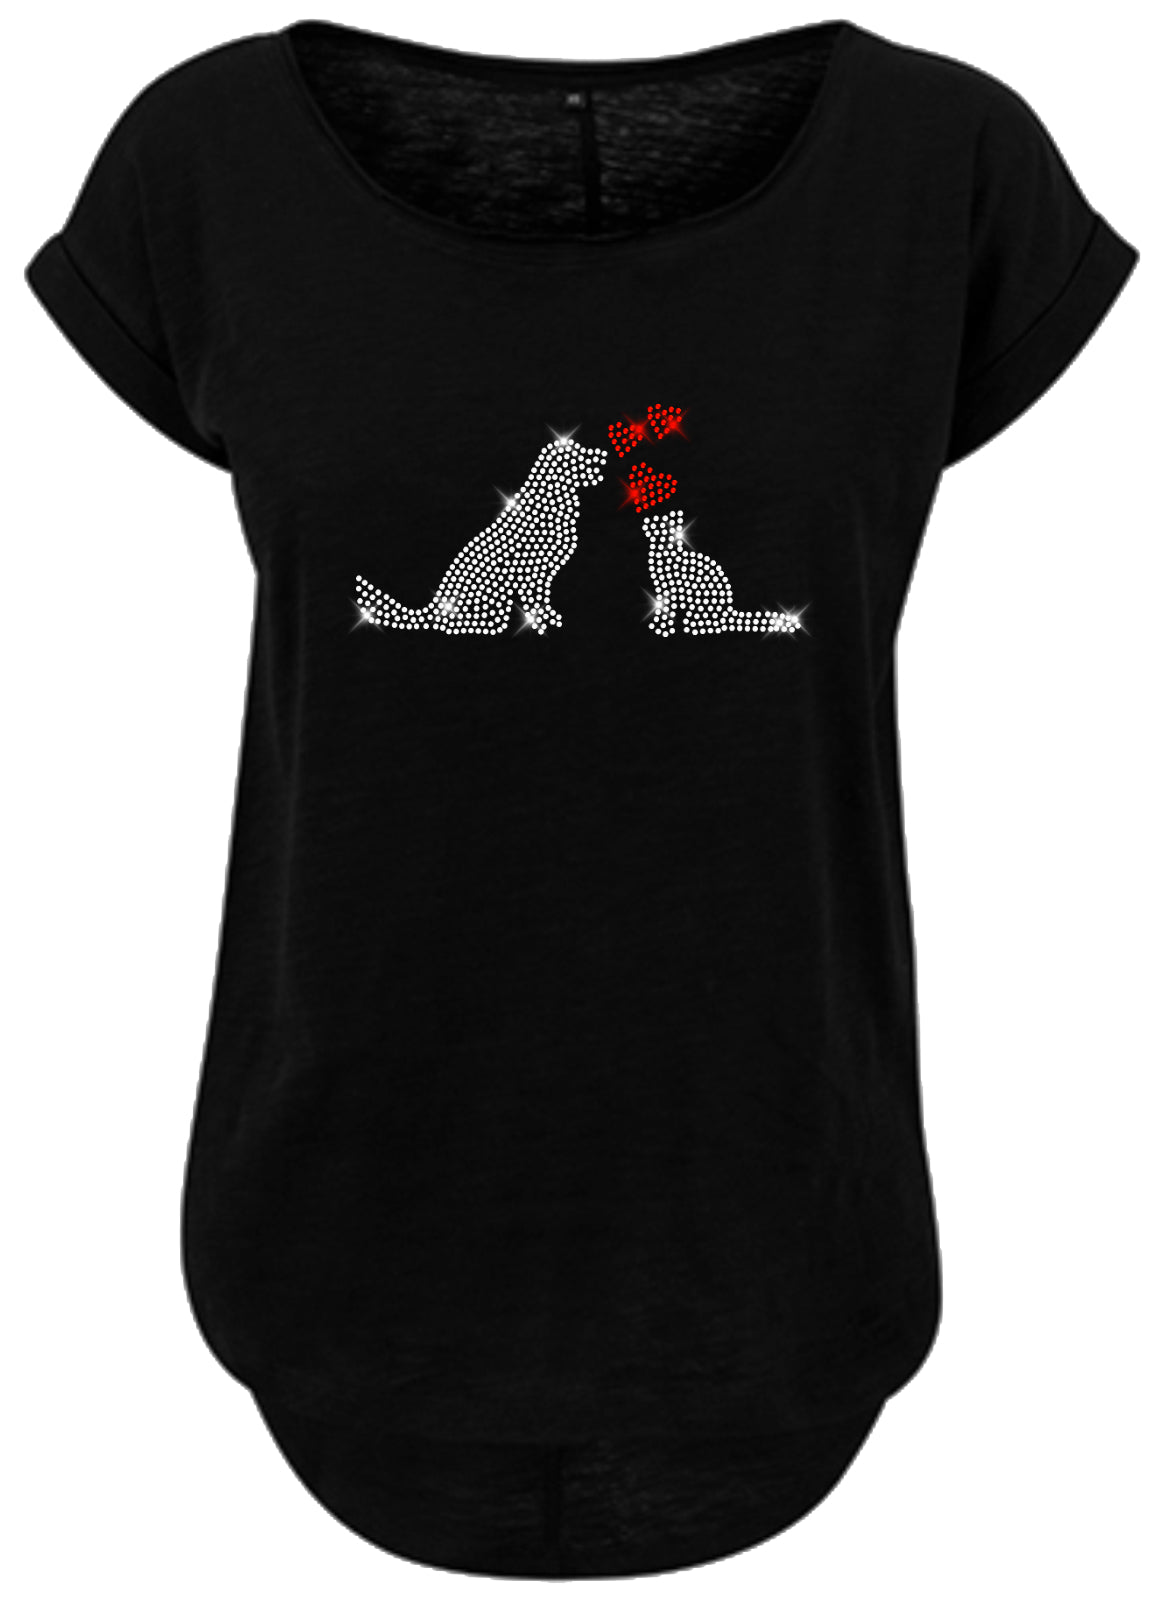 Blingeling®Shirts Damen T-Shirt   mit Hund und Katze in Kristall Strass mit roten Herzen